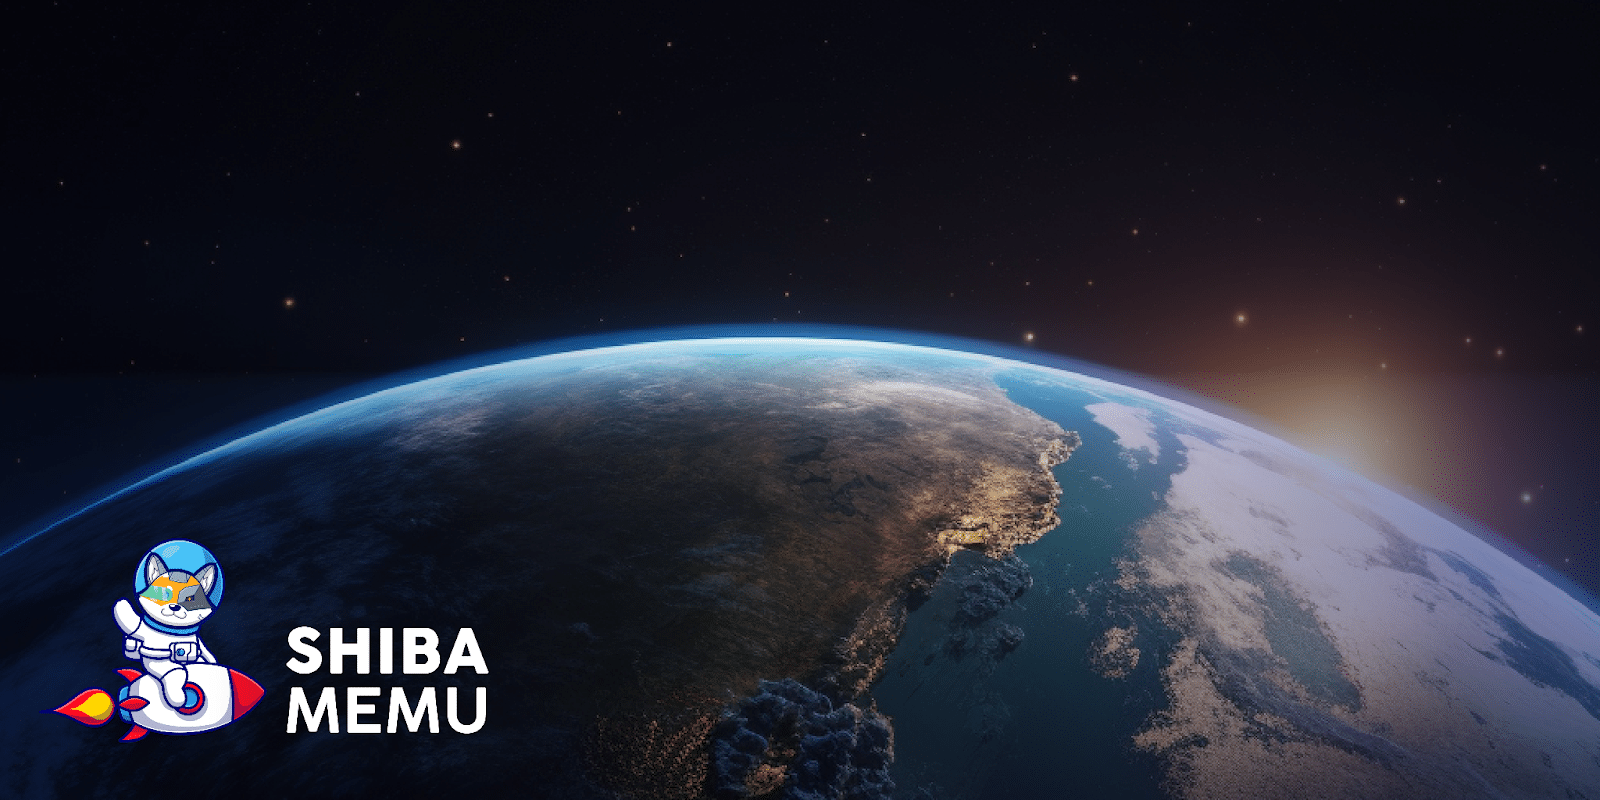 Le chien de Shiba Memu déguisé en cosmonaute avec une image de la Terre en fond.